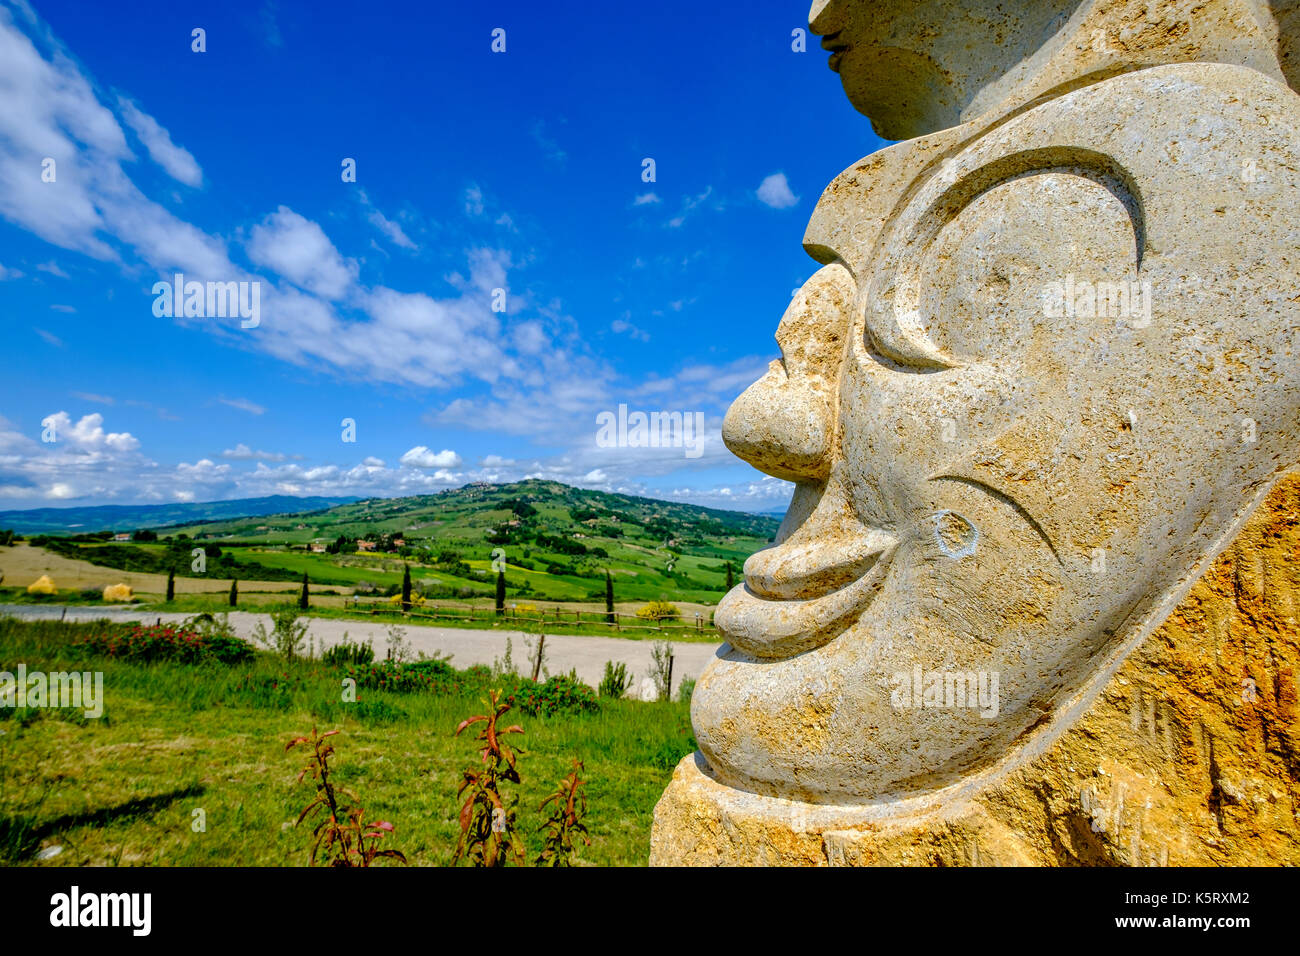 Typische tuscanian Landschaft mit Hügeln, Feldern, Zypressen und eine kunstvolle Fels gehauene Skulptur Stockfoto